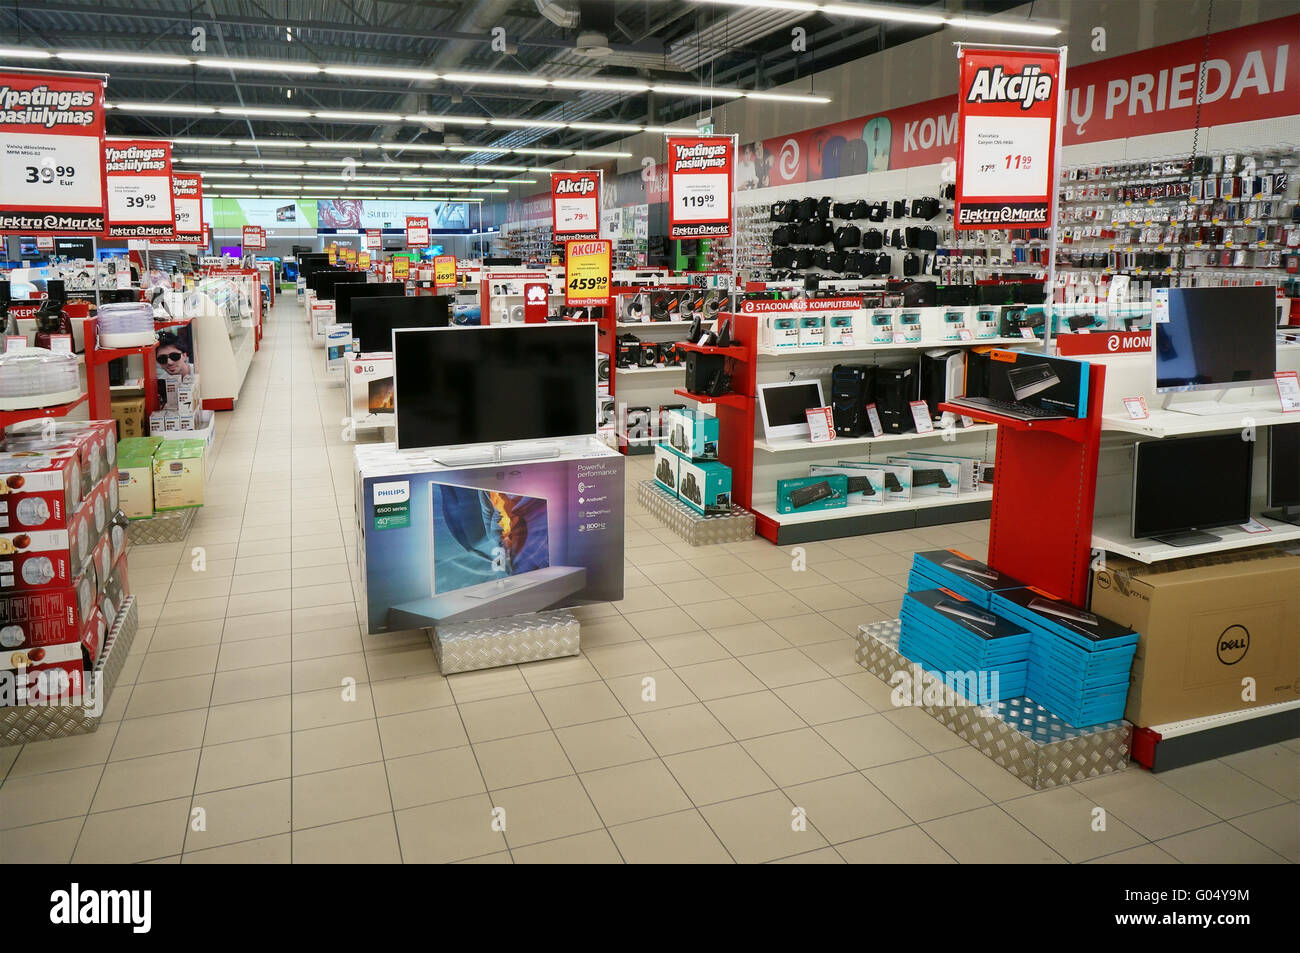 VILNIUS, LITUANIE - avril 27, 2016 : Elektromarkt magasin d'appareils électroniques grand public en Nordika hyper marché. Promotions et bonus sont Banque D'Images